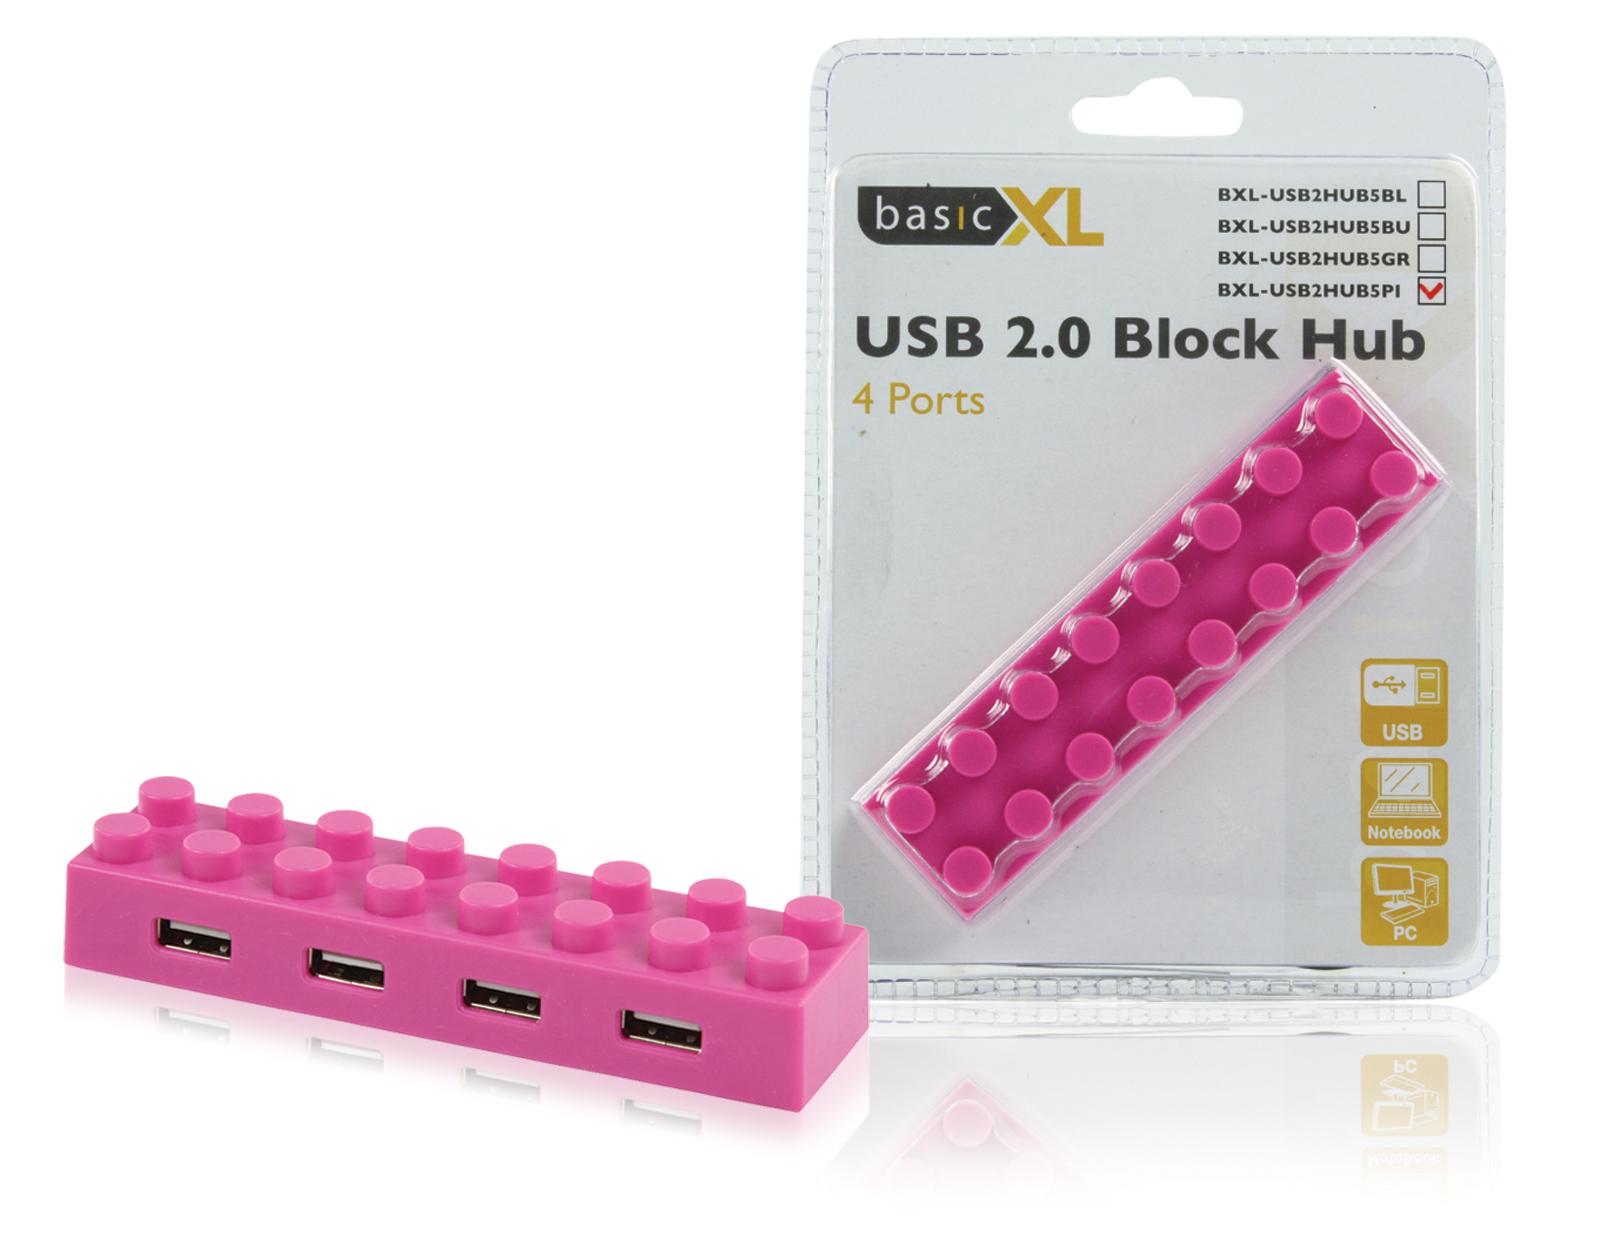 Foto basicXL Concentrador USB 2.0 de 4 puertos rosa basicXL